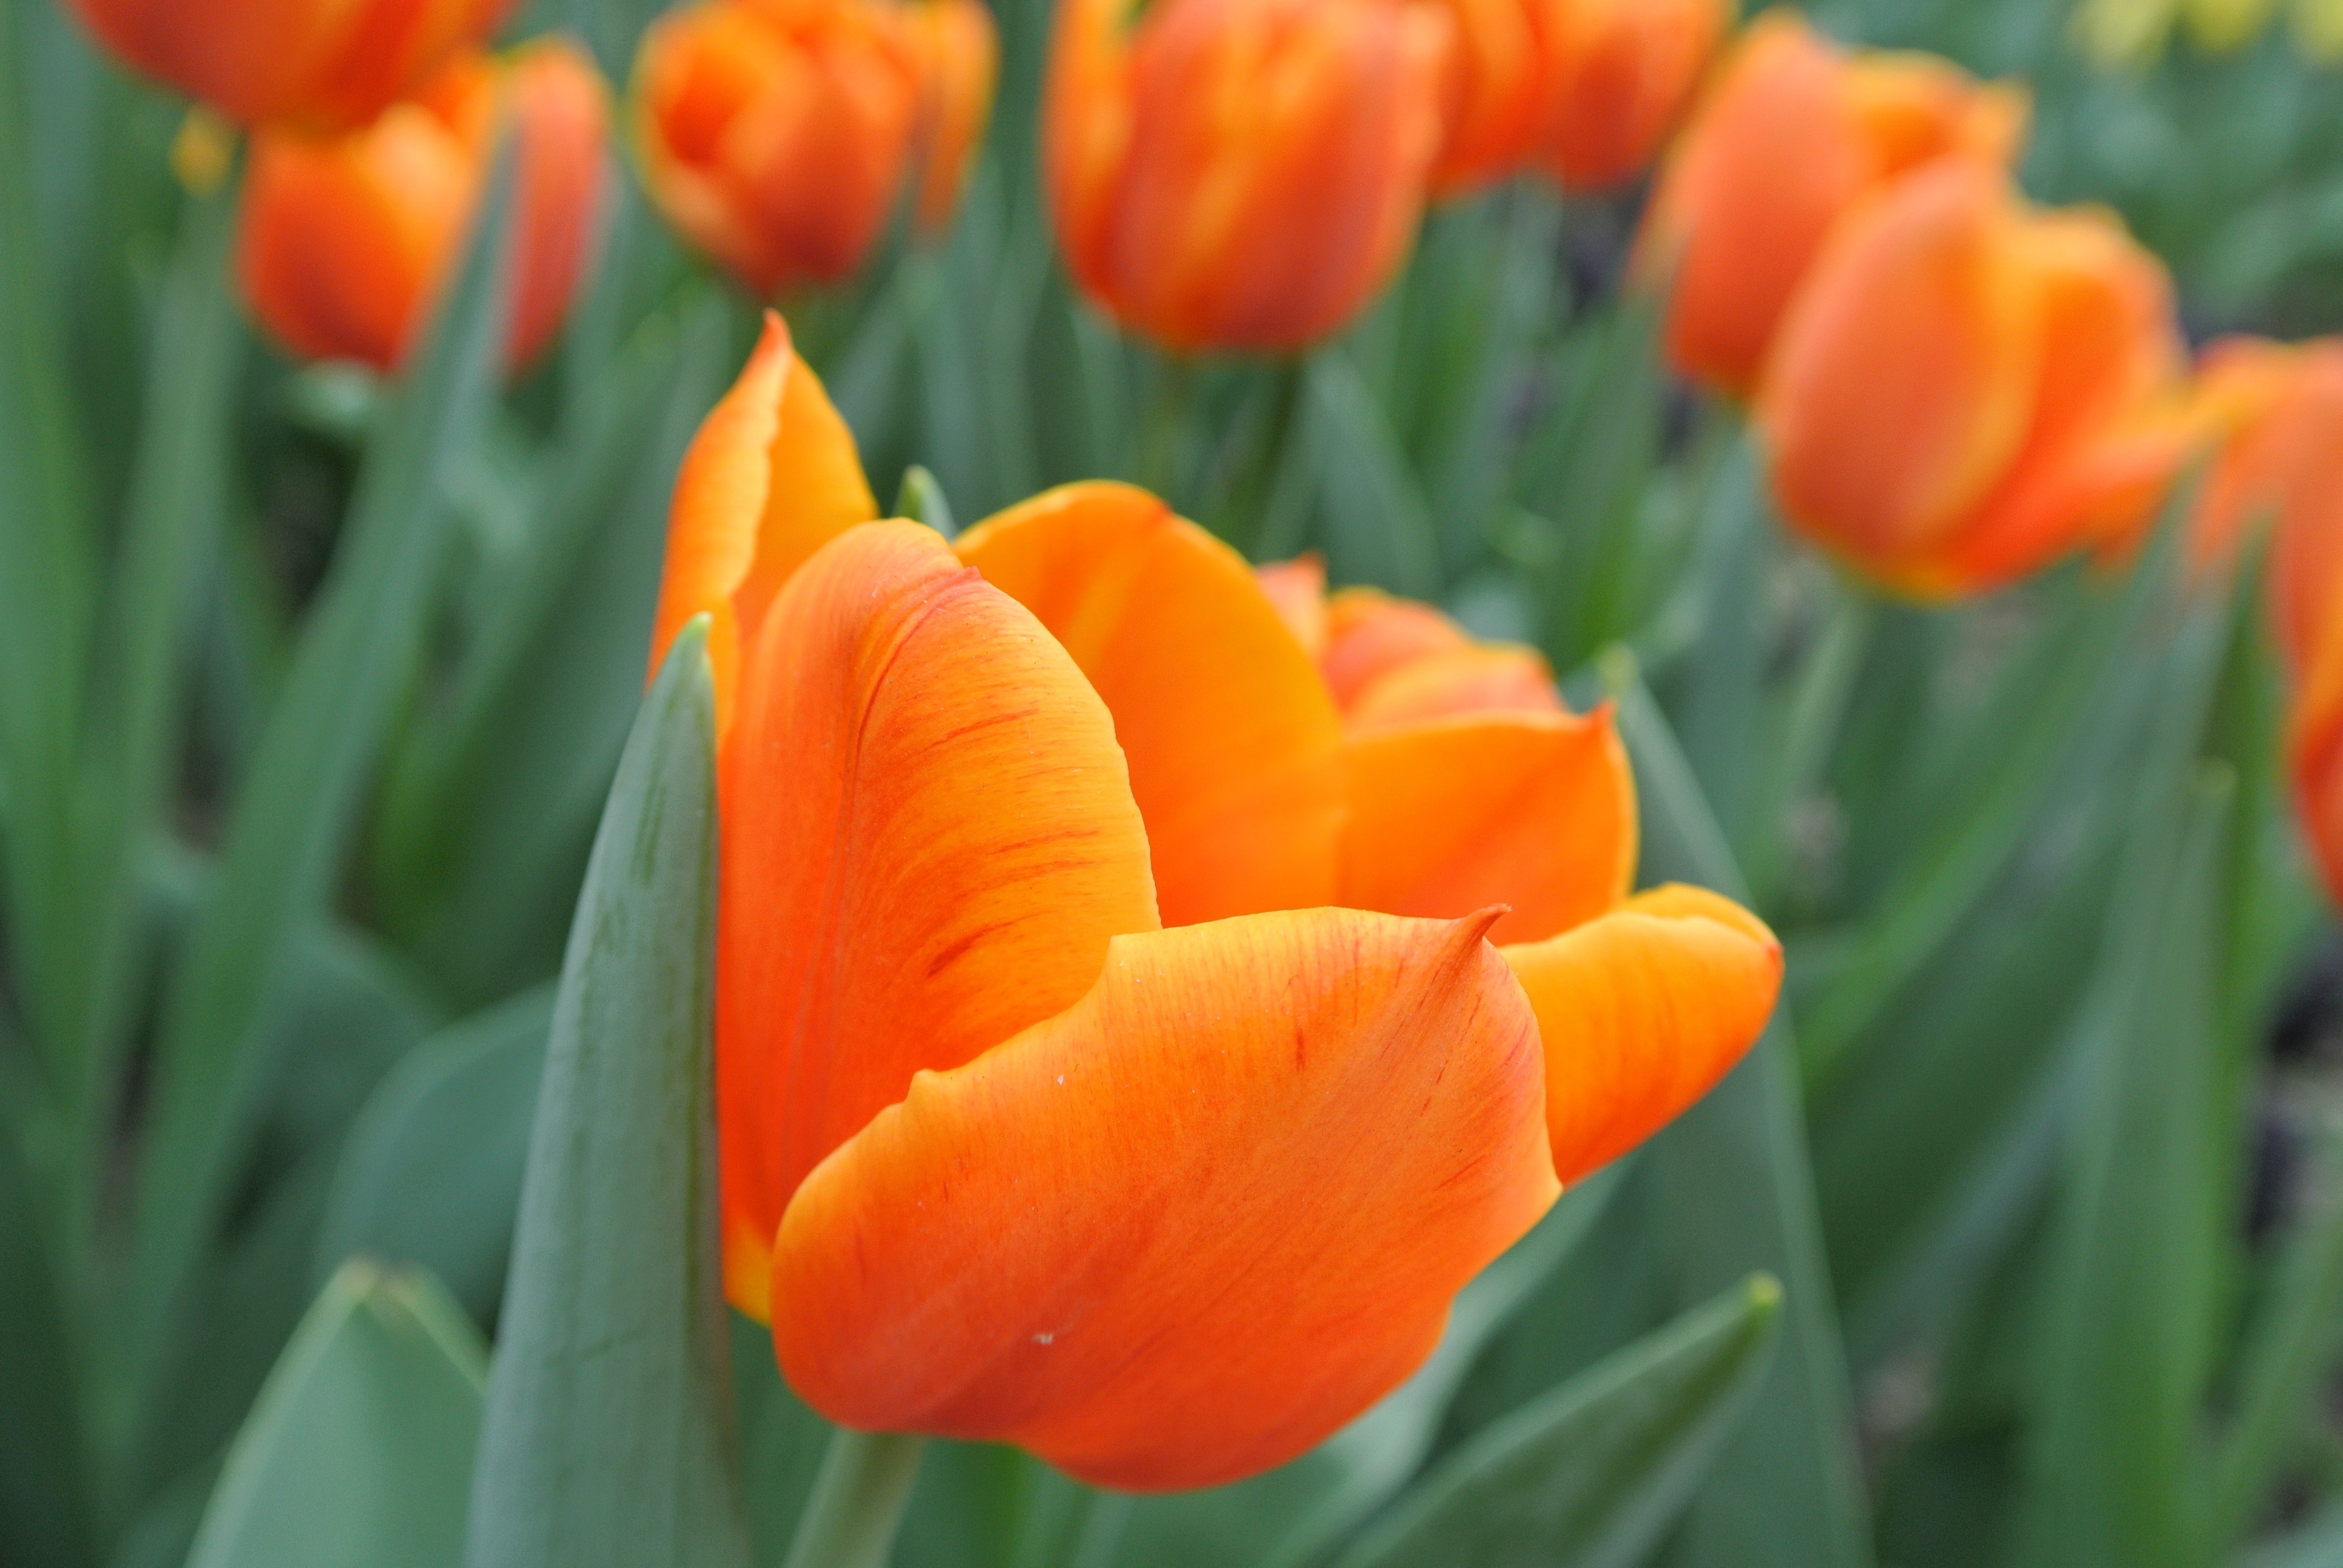 Tulips, Orange Flower, Blooming, Flower, flower, orange color